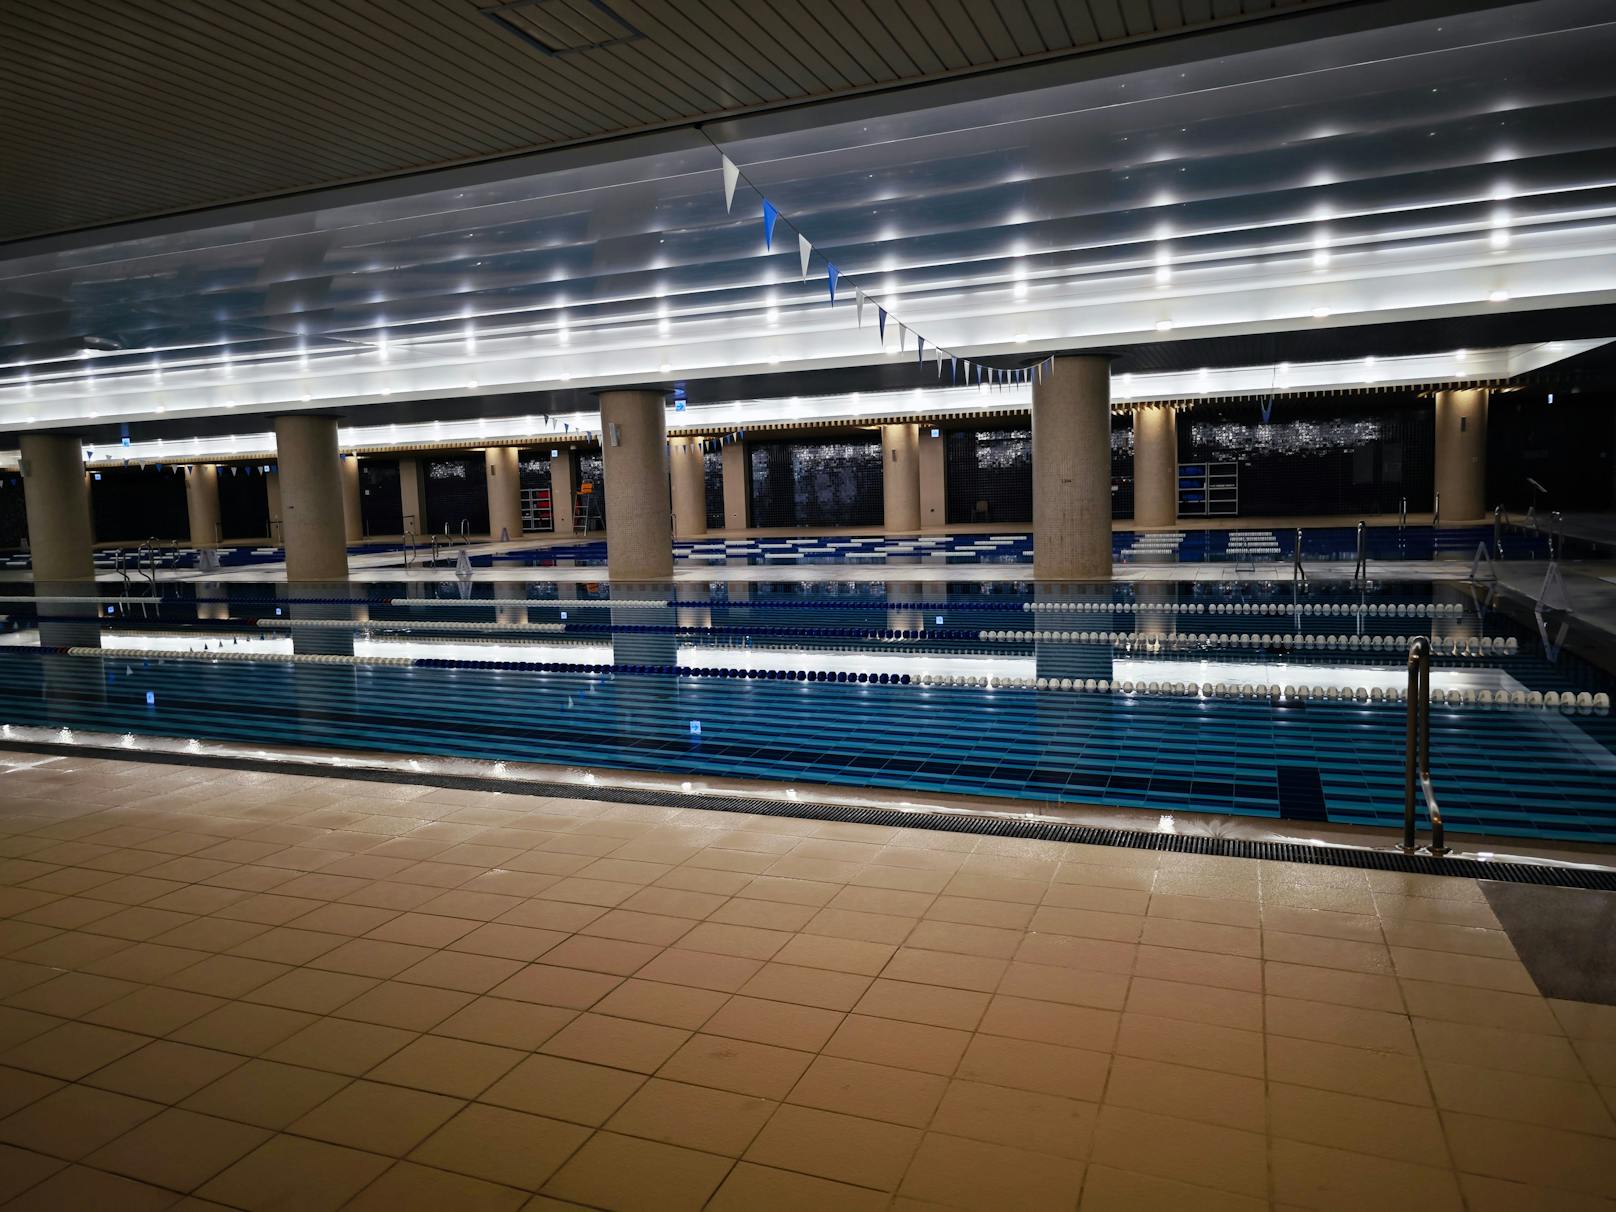 Hinter jeder Ecke warten Überraschungen, darunter 13 Cafeterien, 15 Kaffeehäuser, aber auch ein Schwimmbecken mit olympischen Maßen direkt in der "Lobby".